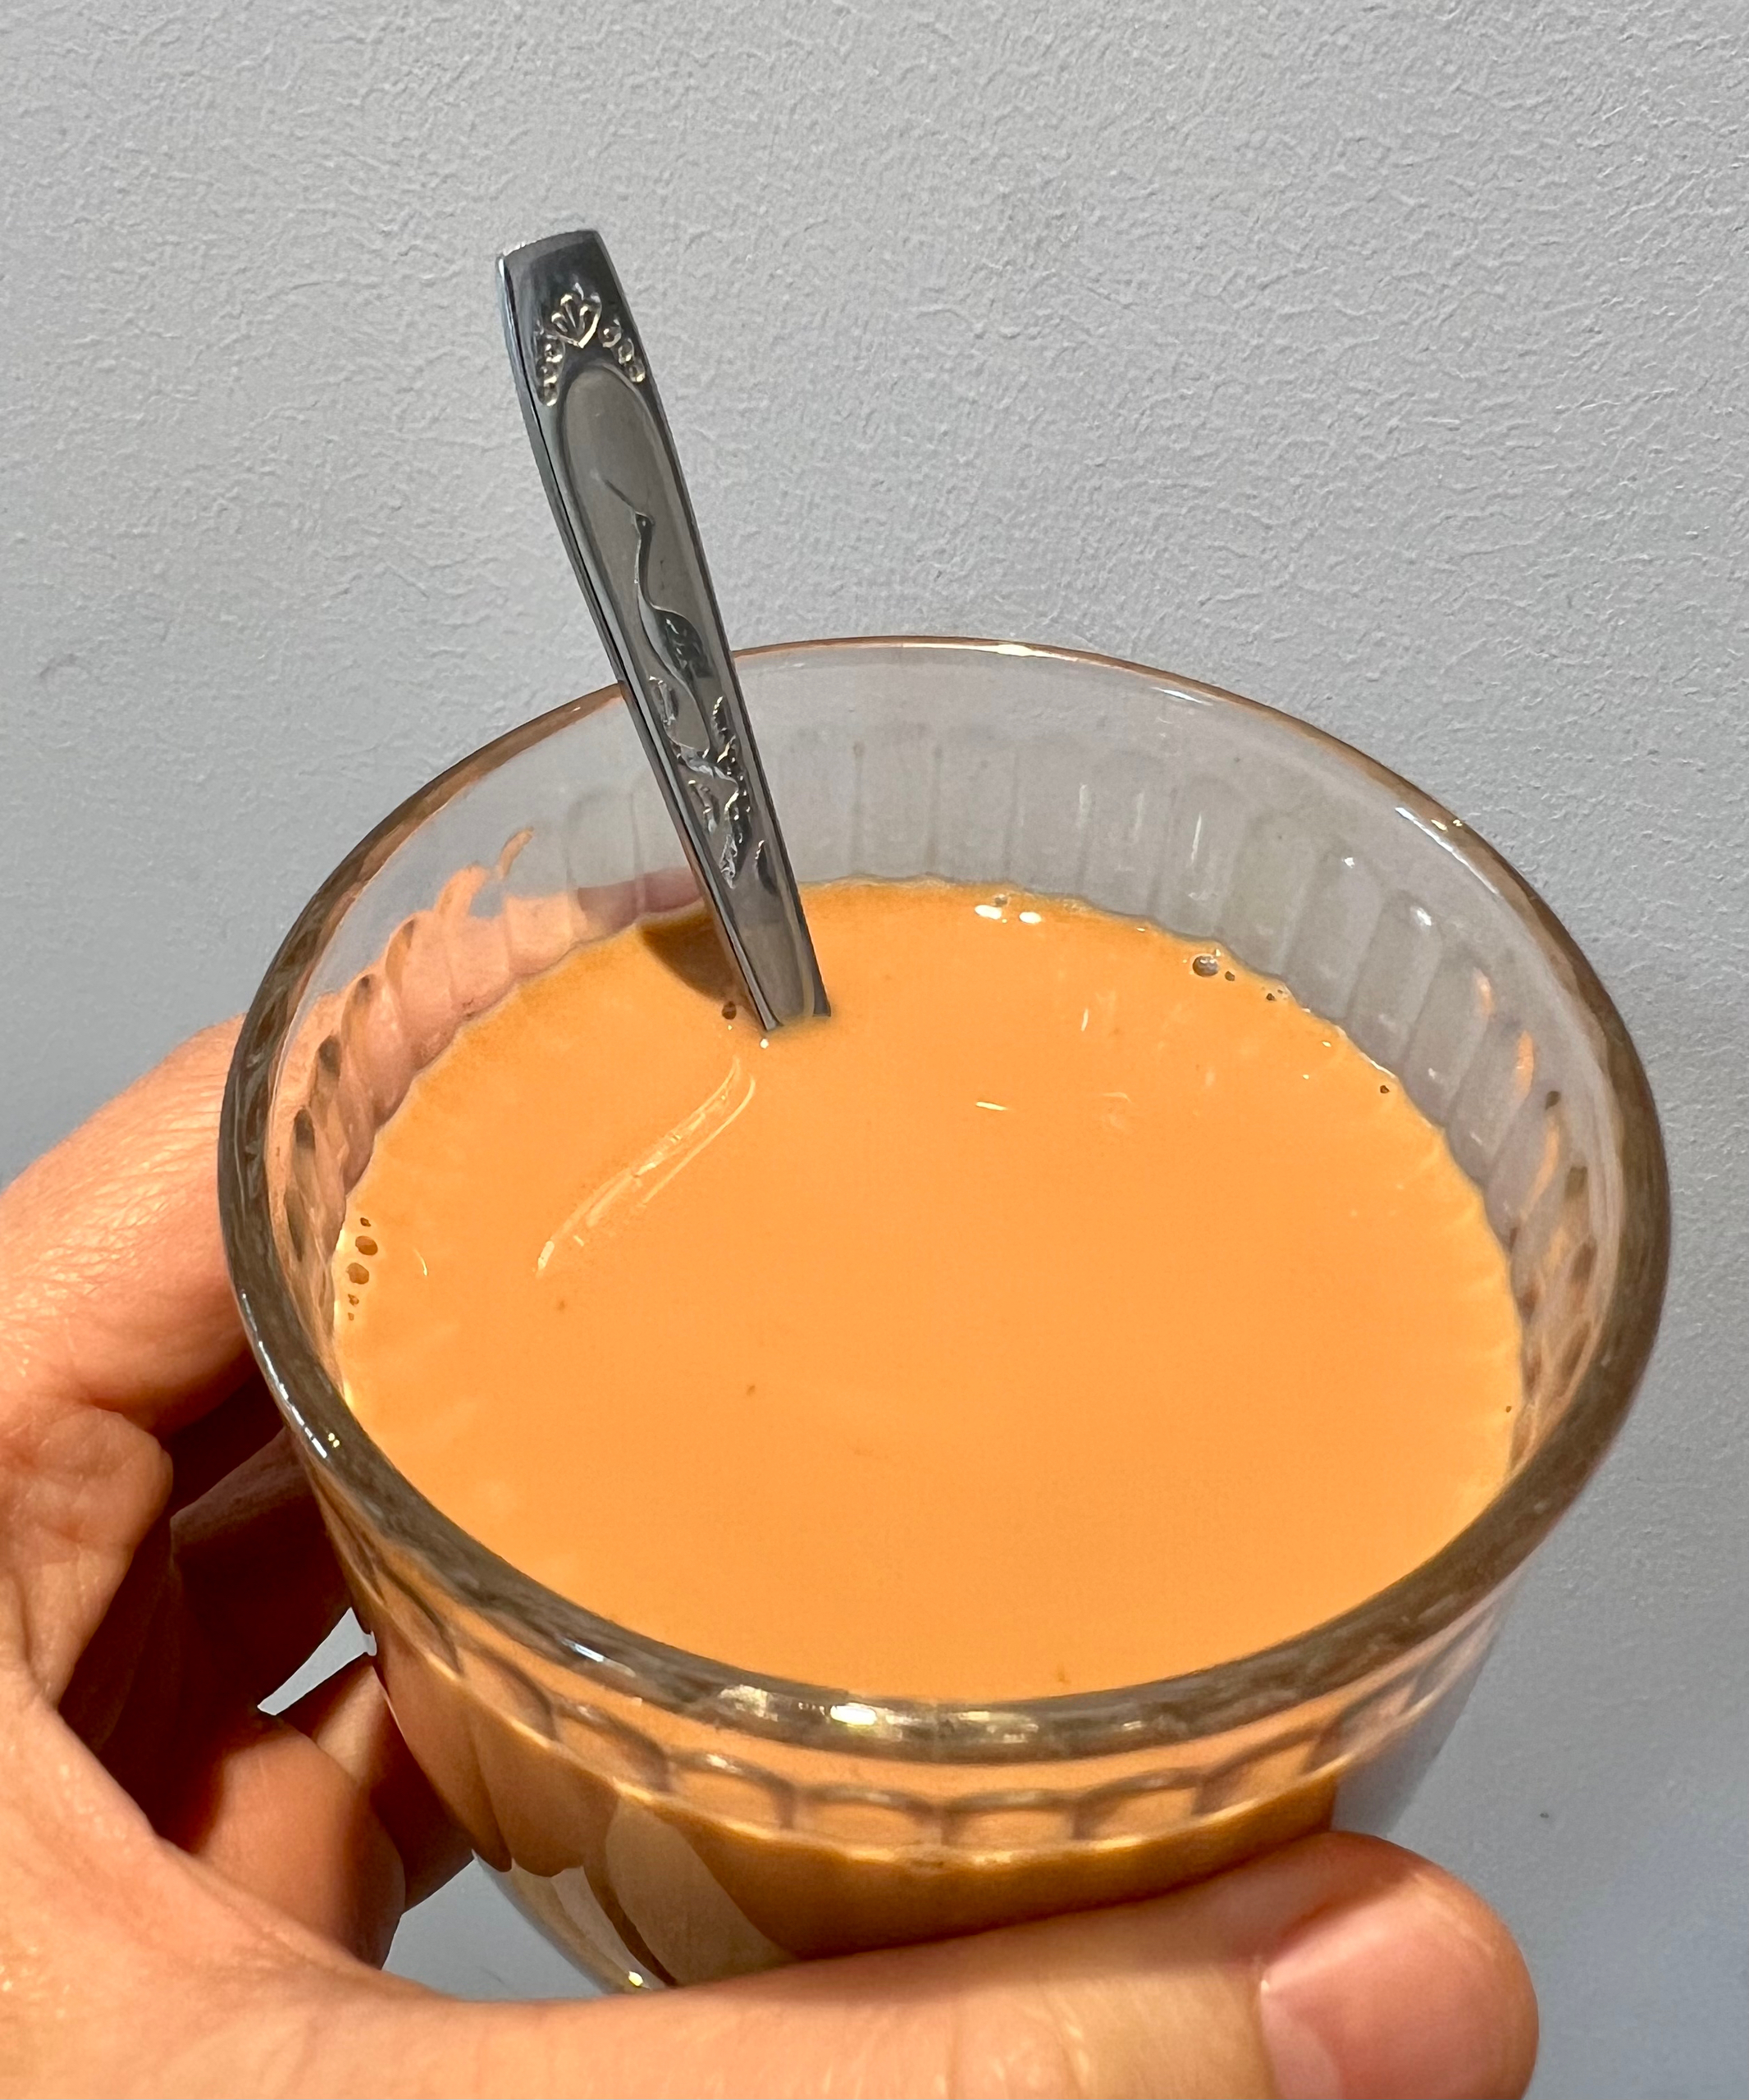 落灰的摩卡壶用起来——摩卡壶煮港式奶茶的做法